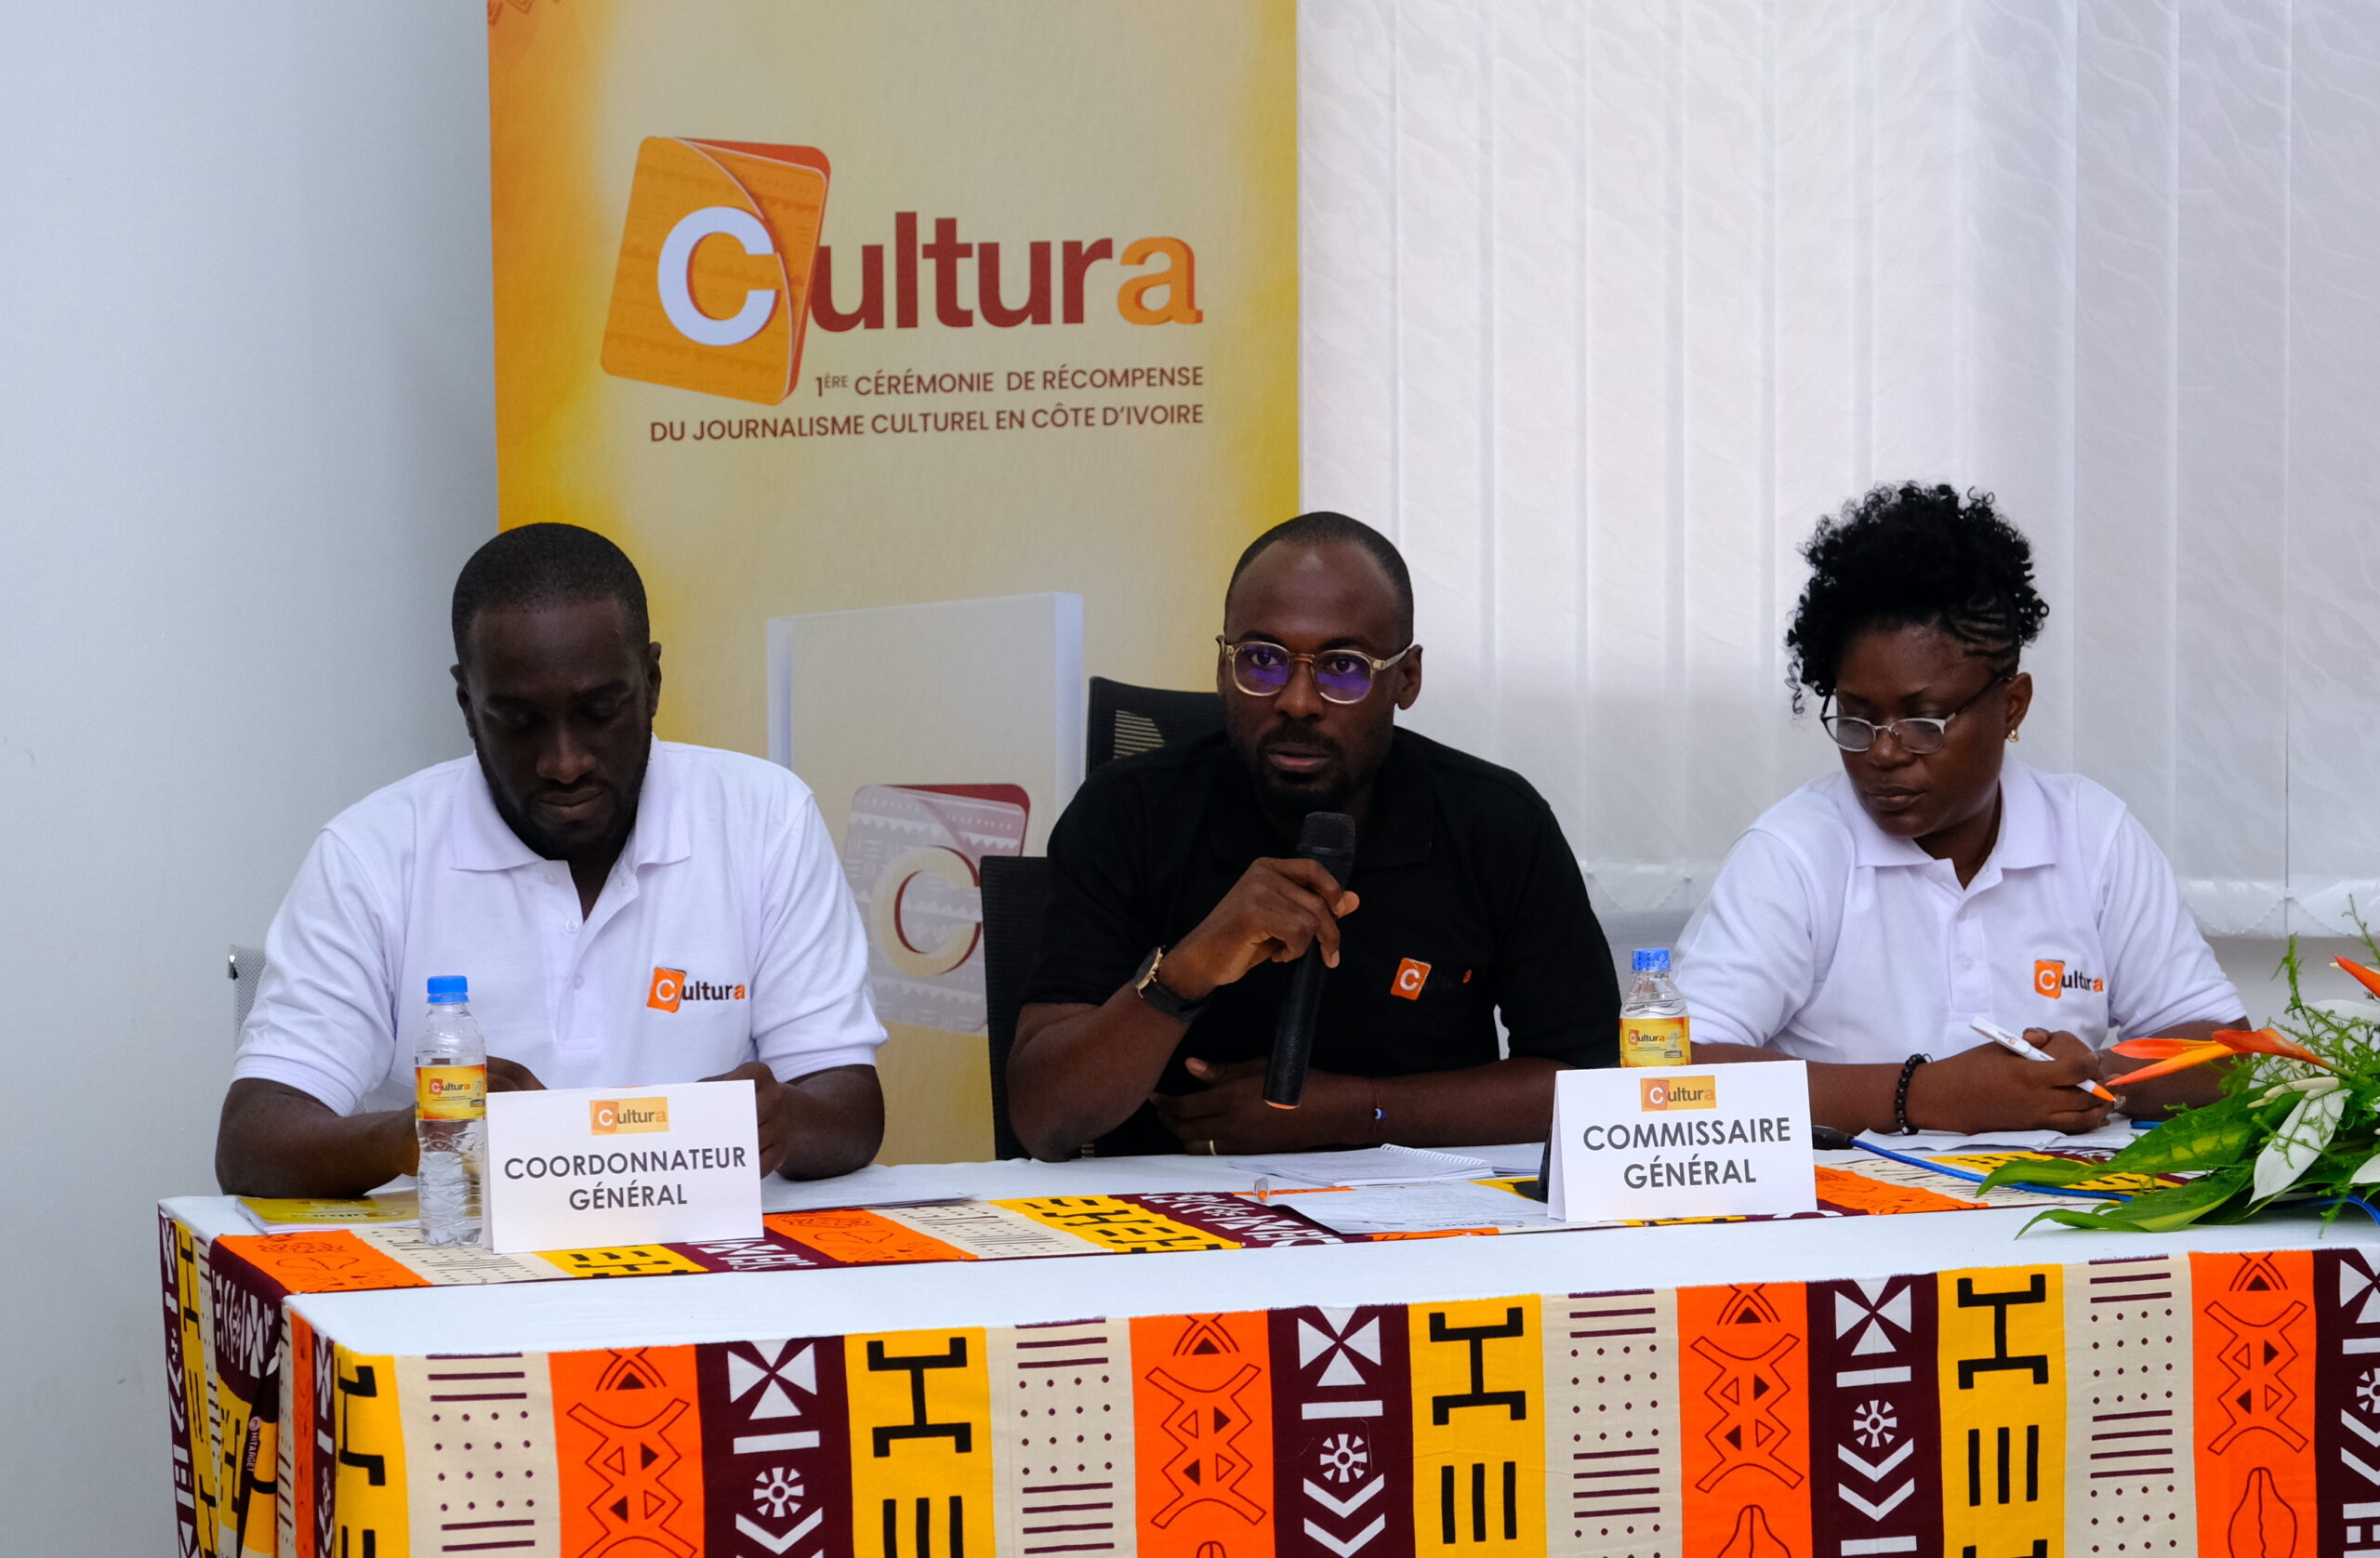 Cultura, Ivorian prize to celebrate cultural journalists